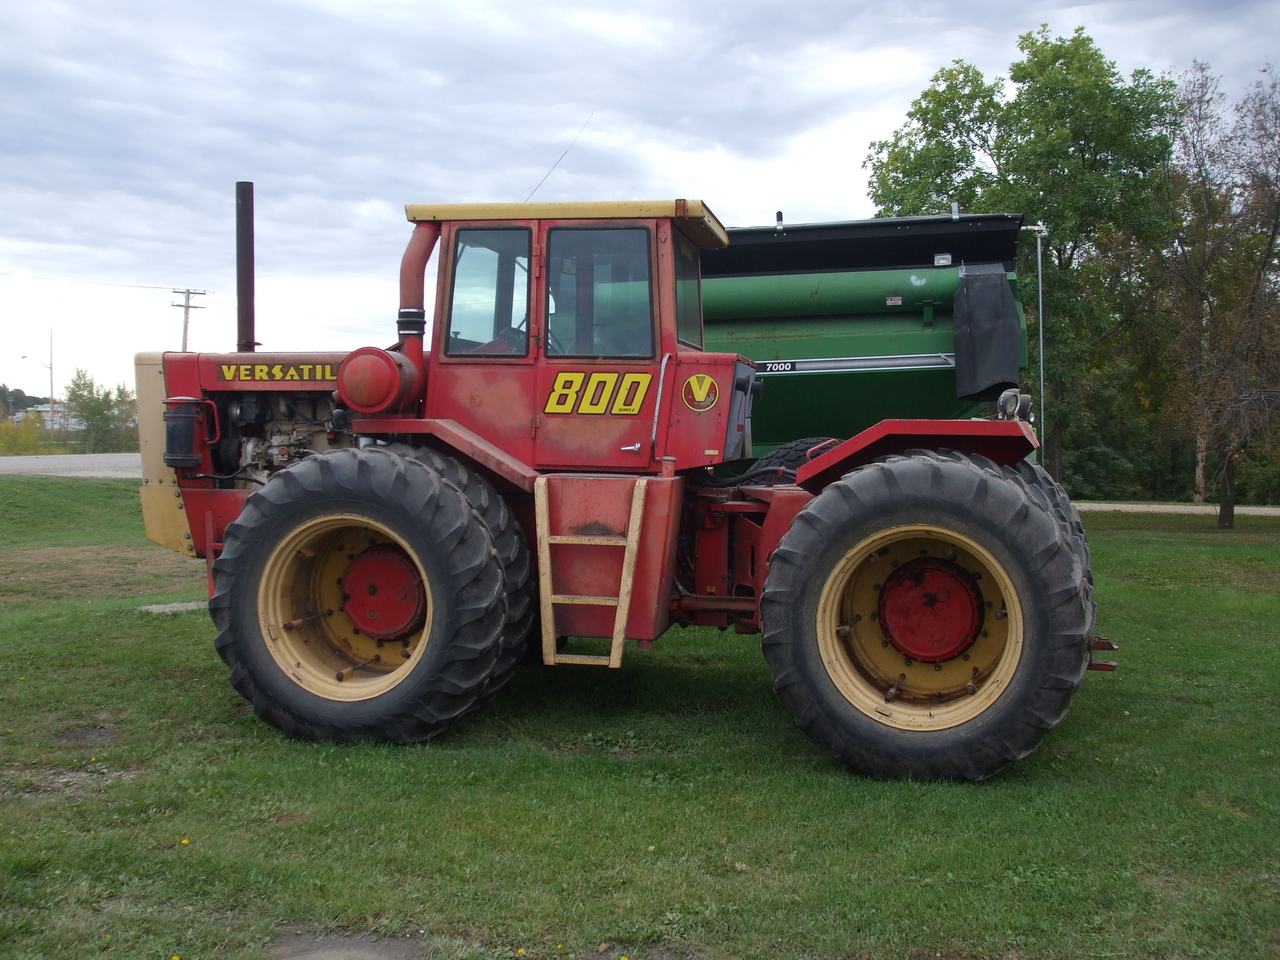 Versatile 800 Series2 Tractor SOLD!!